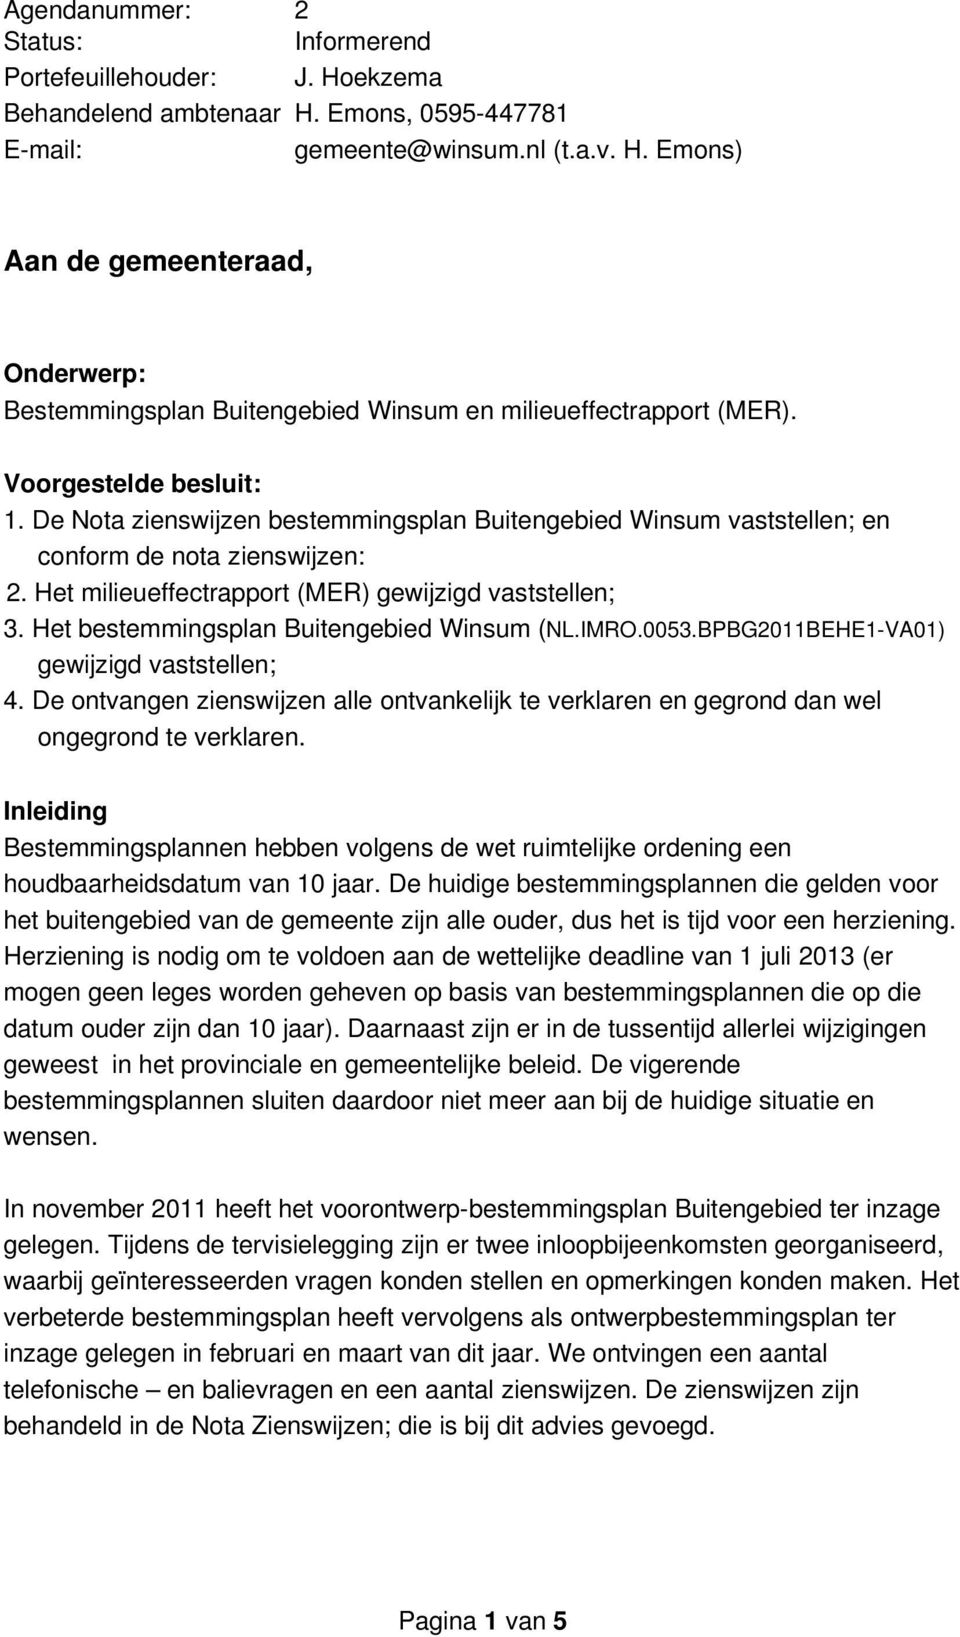 Het bestemmingsplan Buitengebied Winsum (NL.IMRO.0053.BPBG2011BEHE1 VA01) gewijzigd vaststellen; 4. De ontvangen zienswijzen alle ontvankelijk te verklaren en gegrond dan wel ongegrond te verklaren.